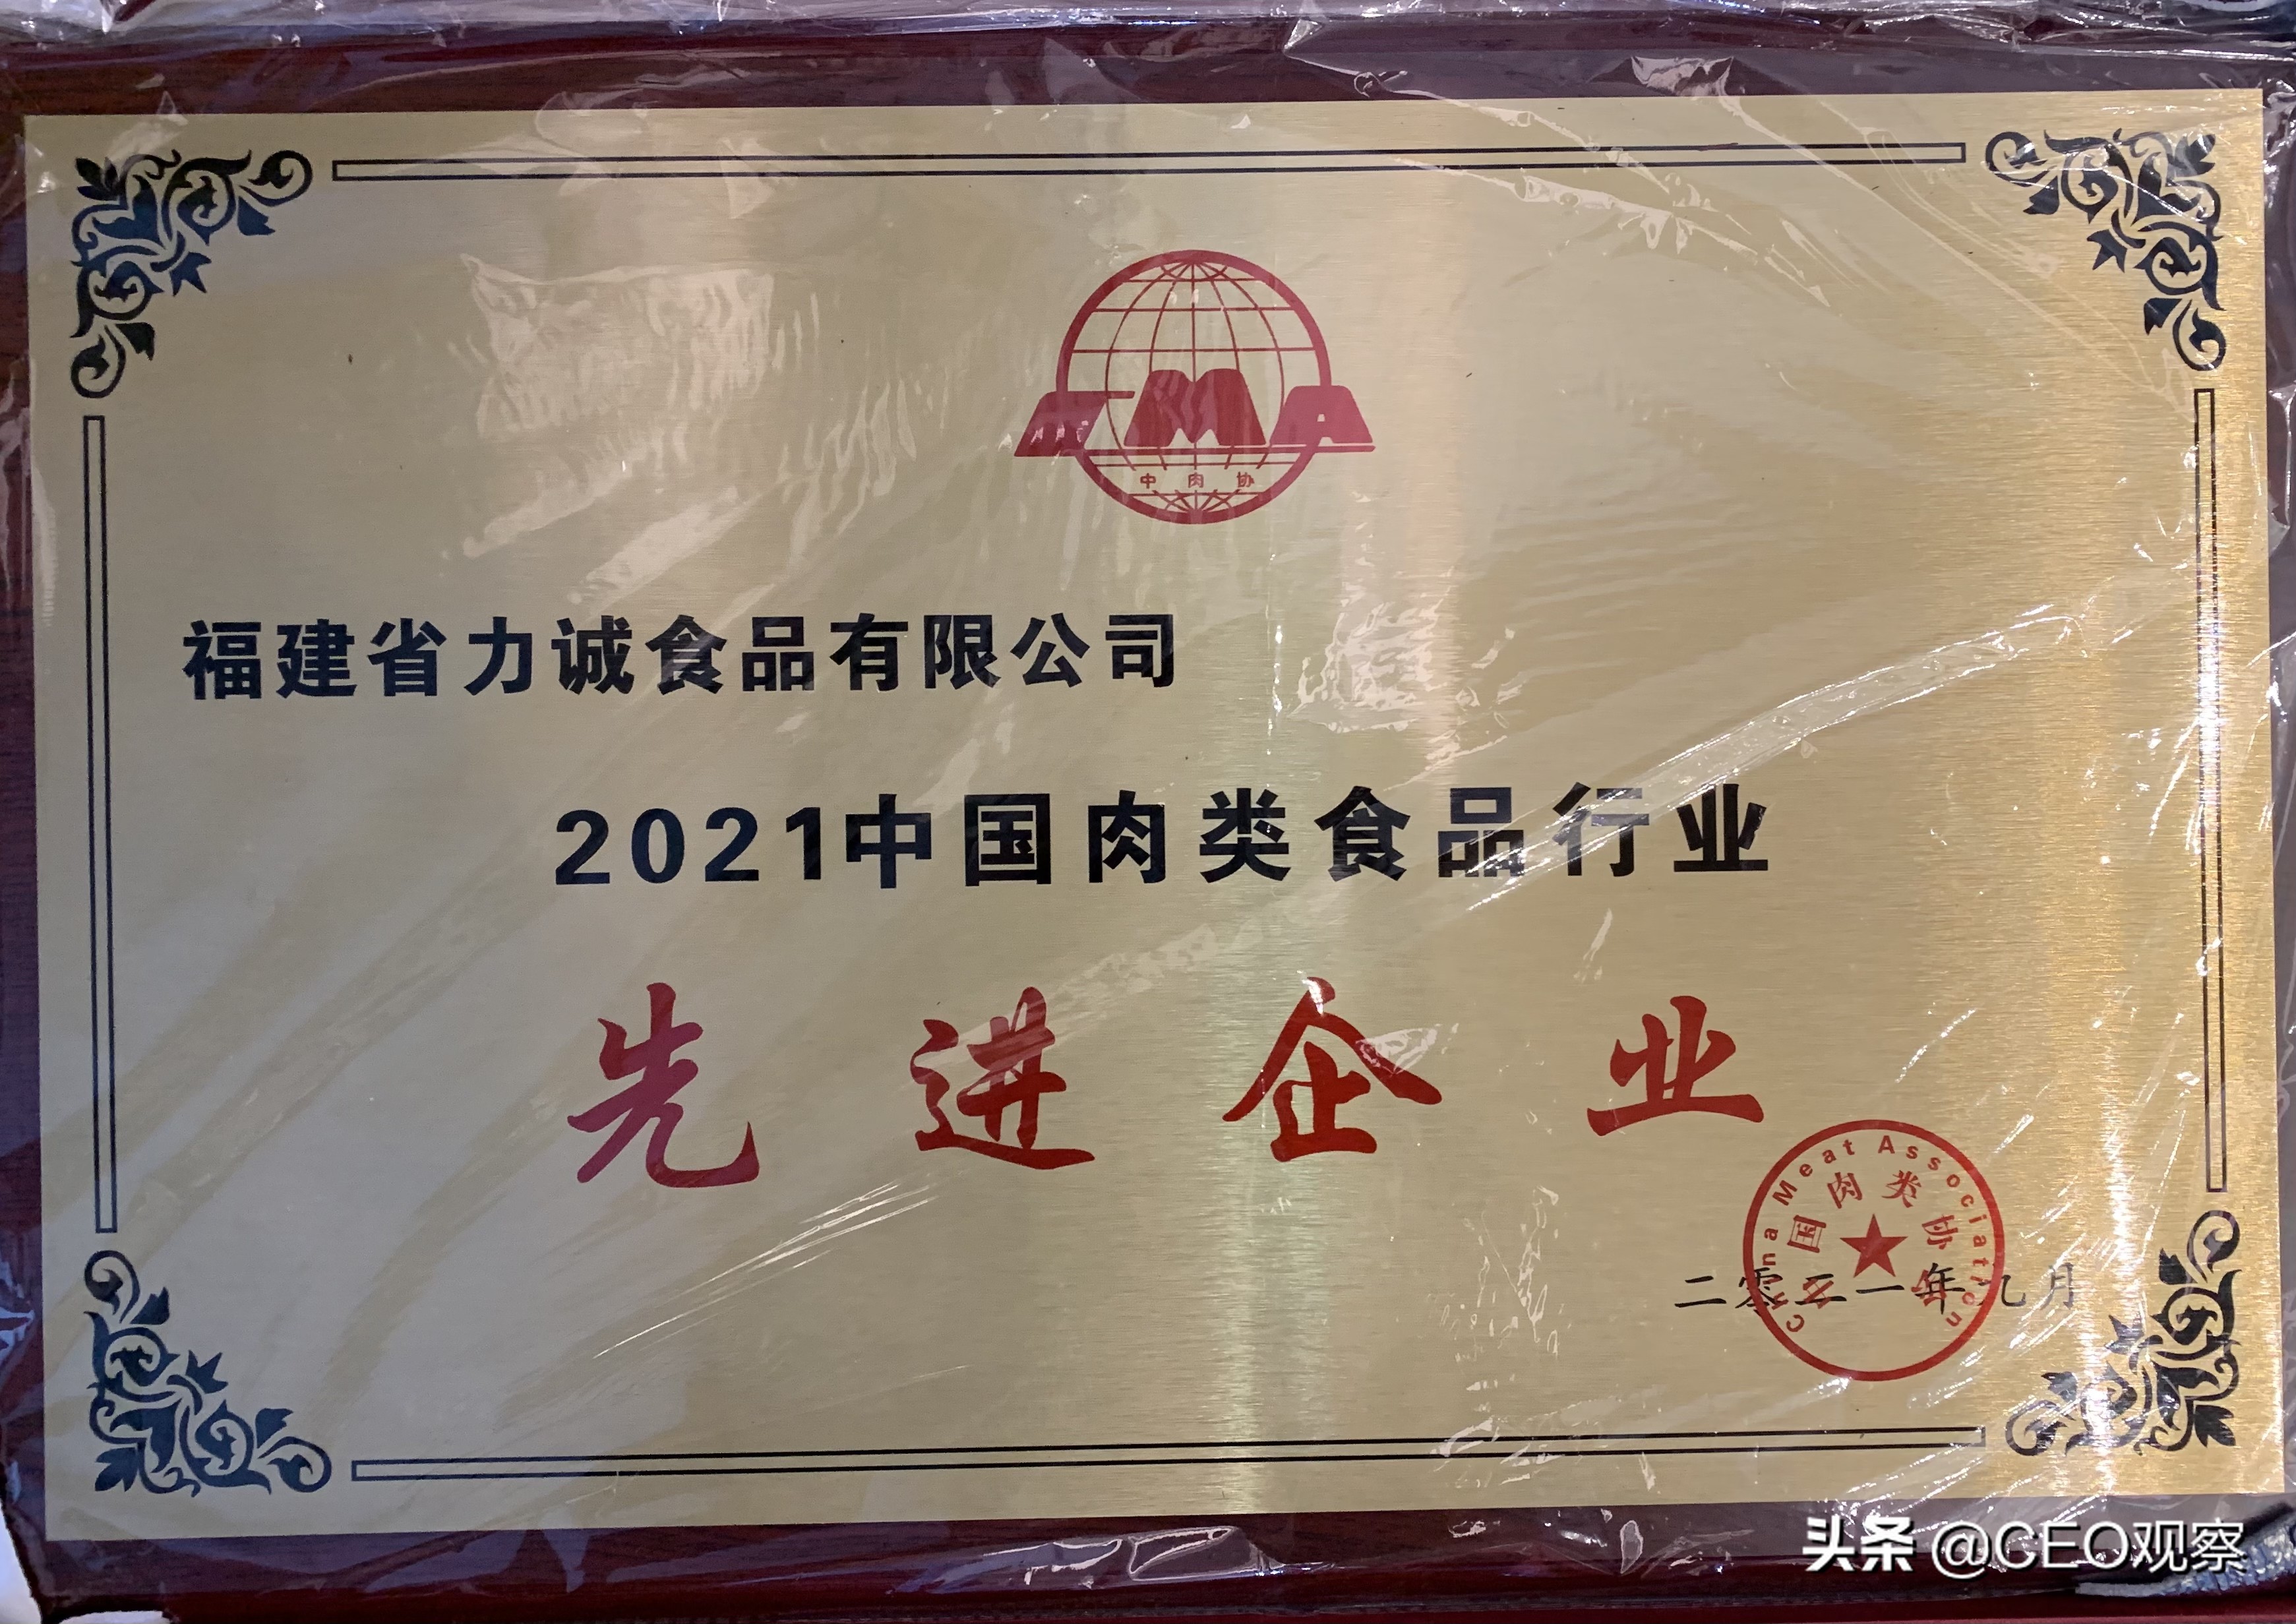 力诚食品荣获“2021年中国肉类食品行业最具价值品牌”等多项大奖